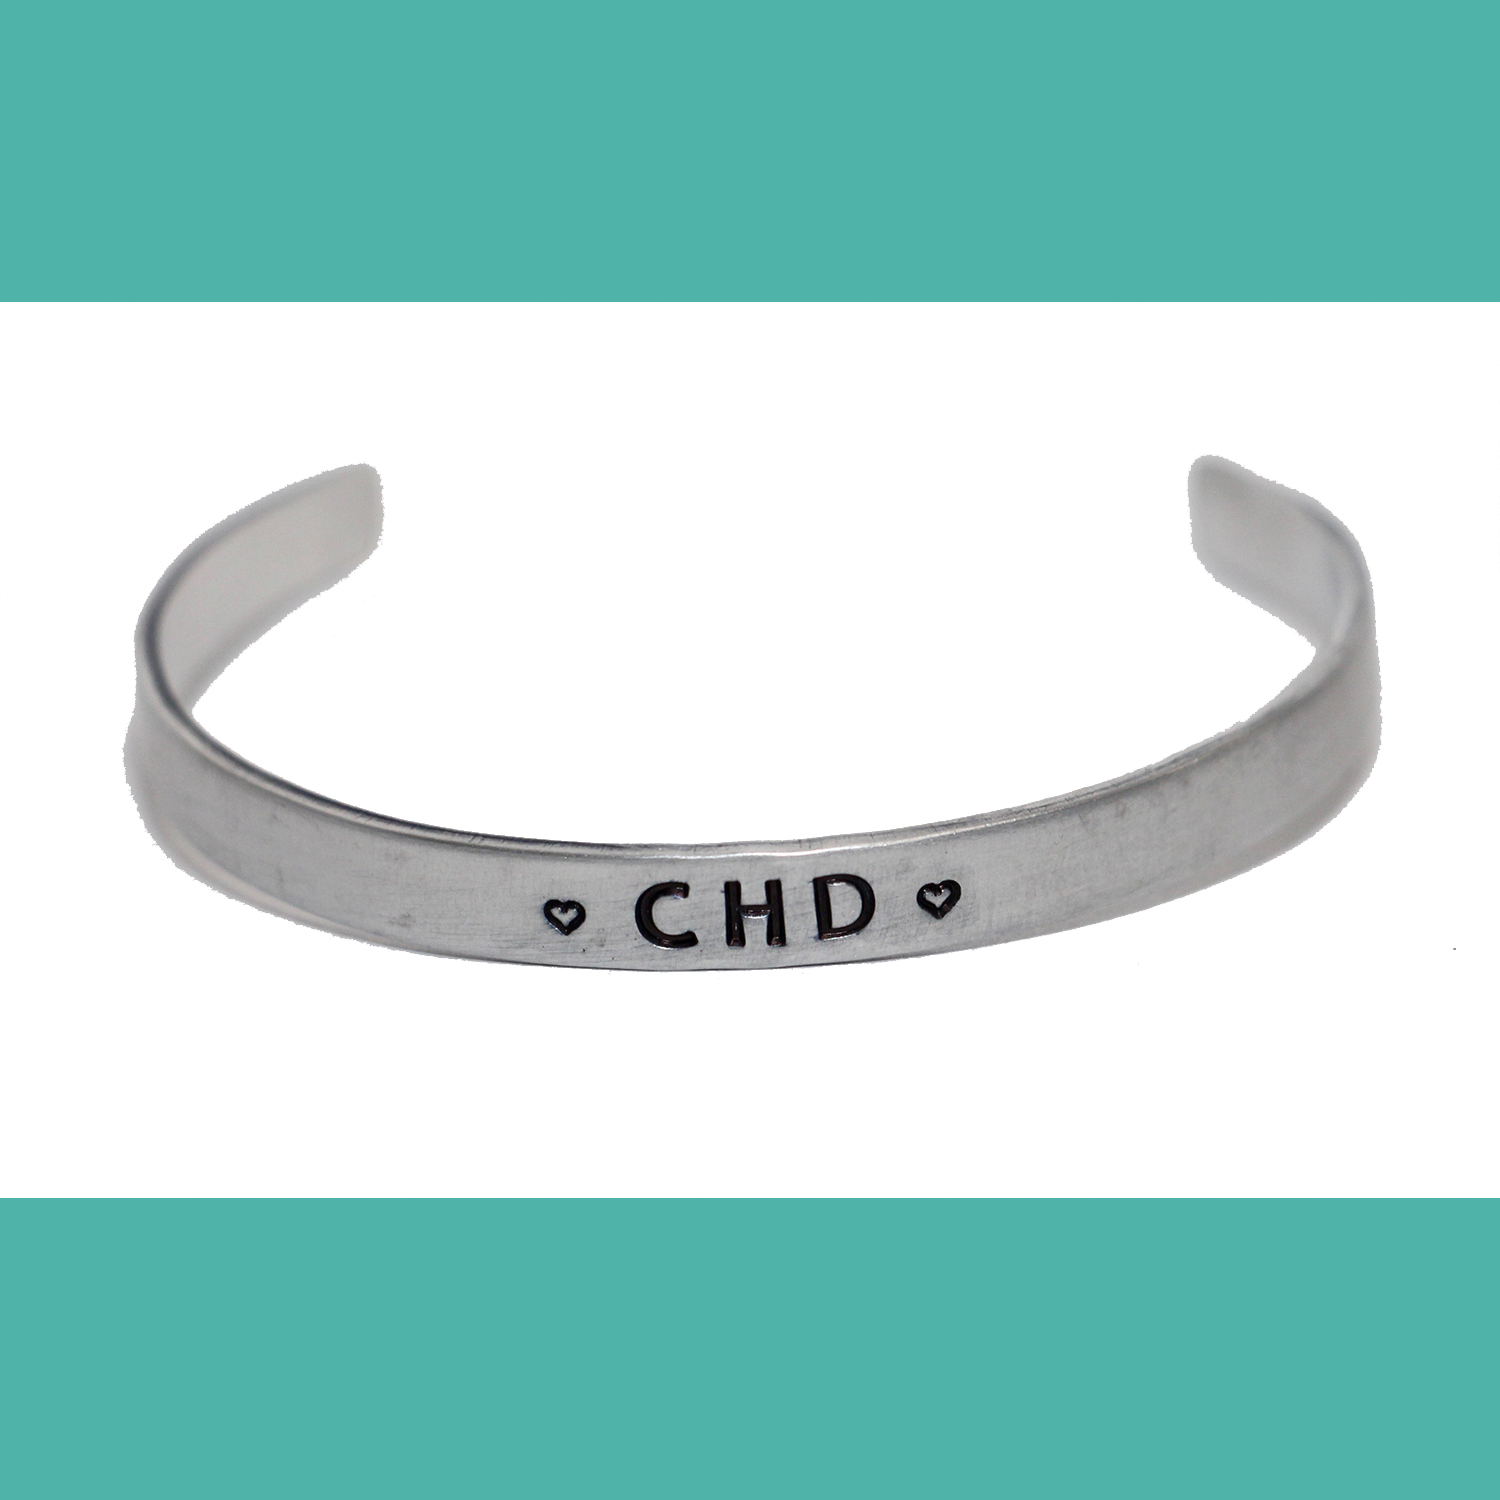 CHD Cuff - CHD Awareness Collection (Silver Tone)